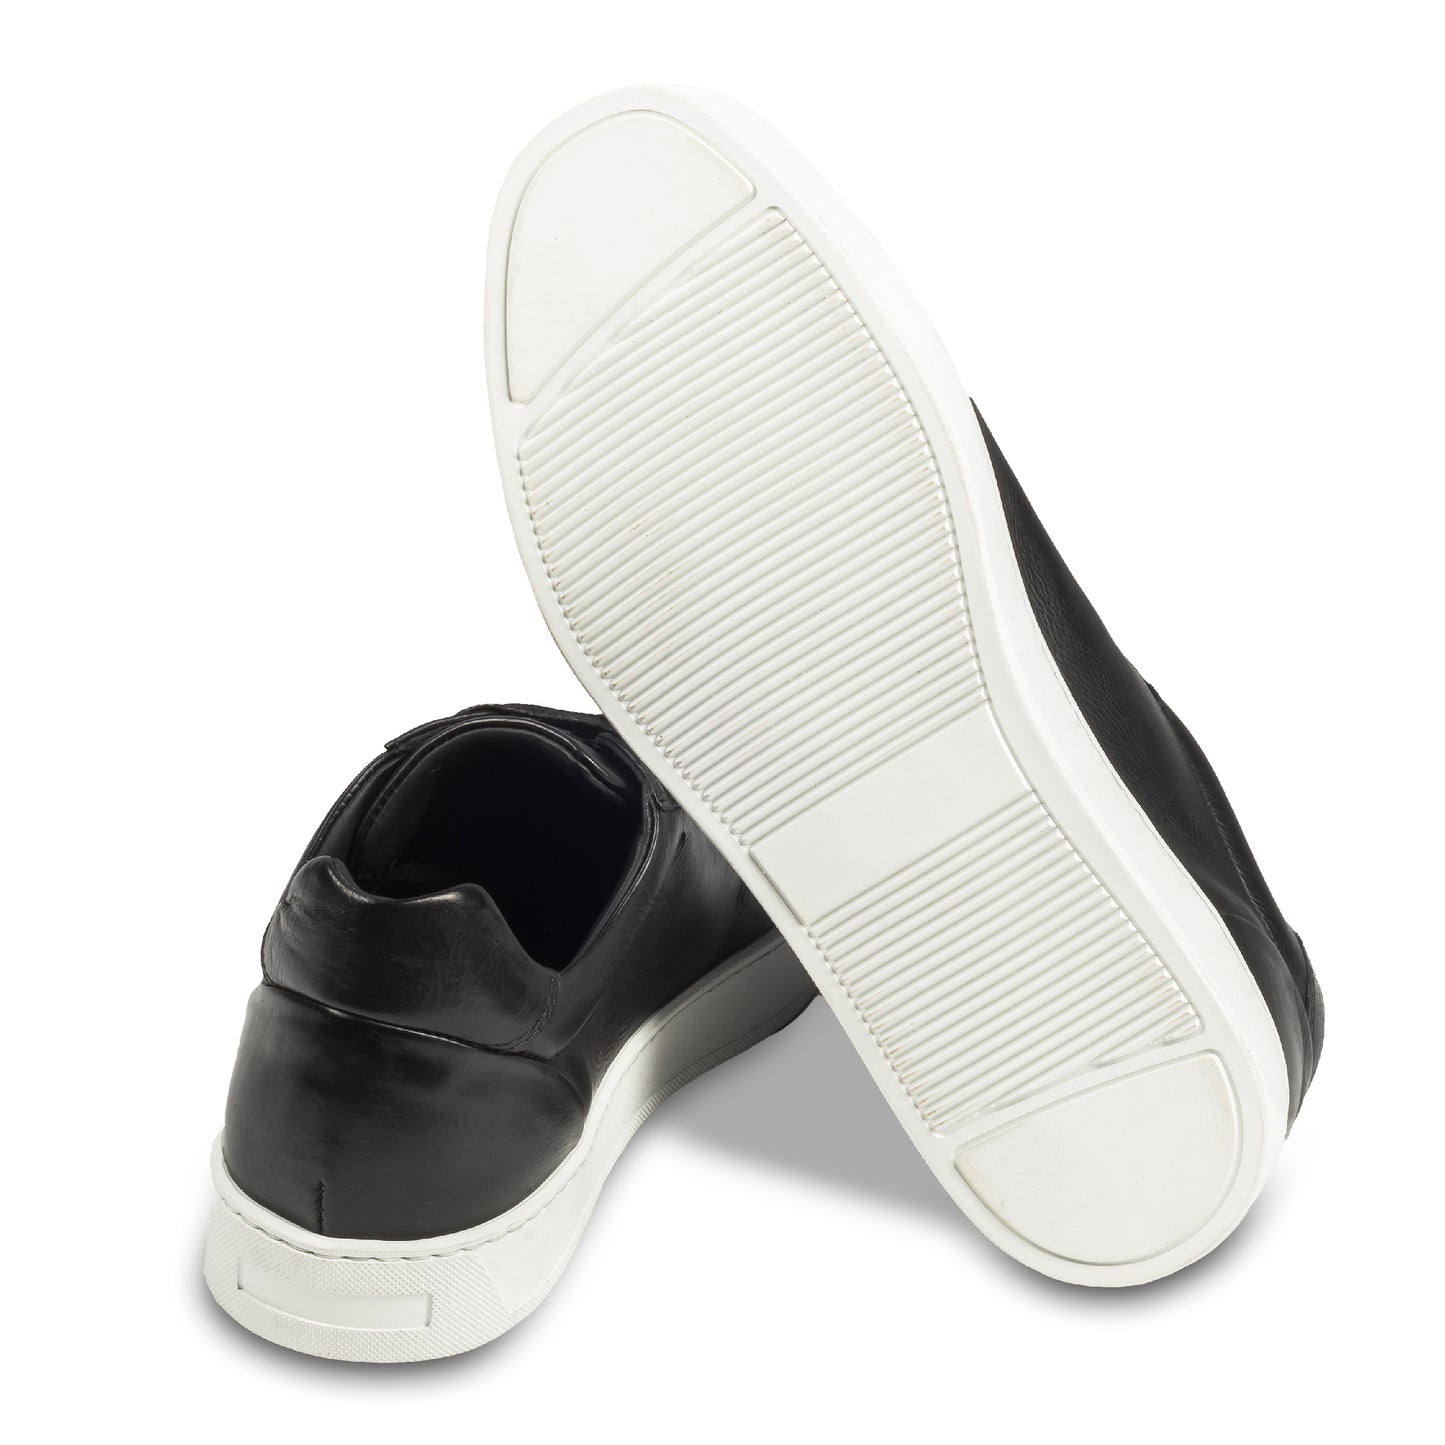 Triverflight – Italienische Herren-Sneaker in schwarz. Aus Kalbsleder handgefertigt. Ansicht der Ferse und Sohlenunterseite.